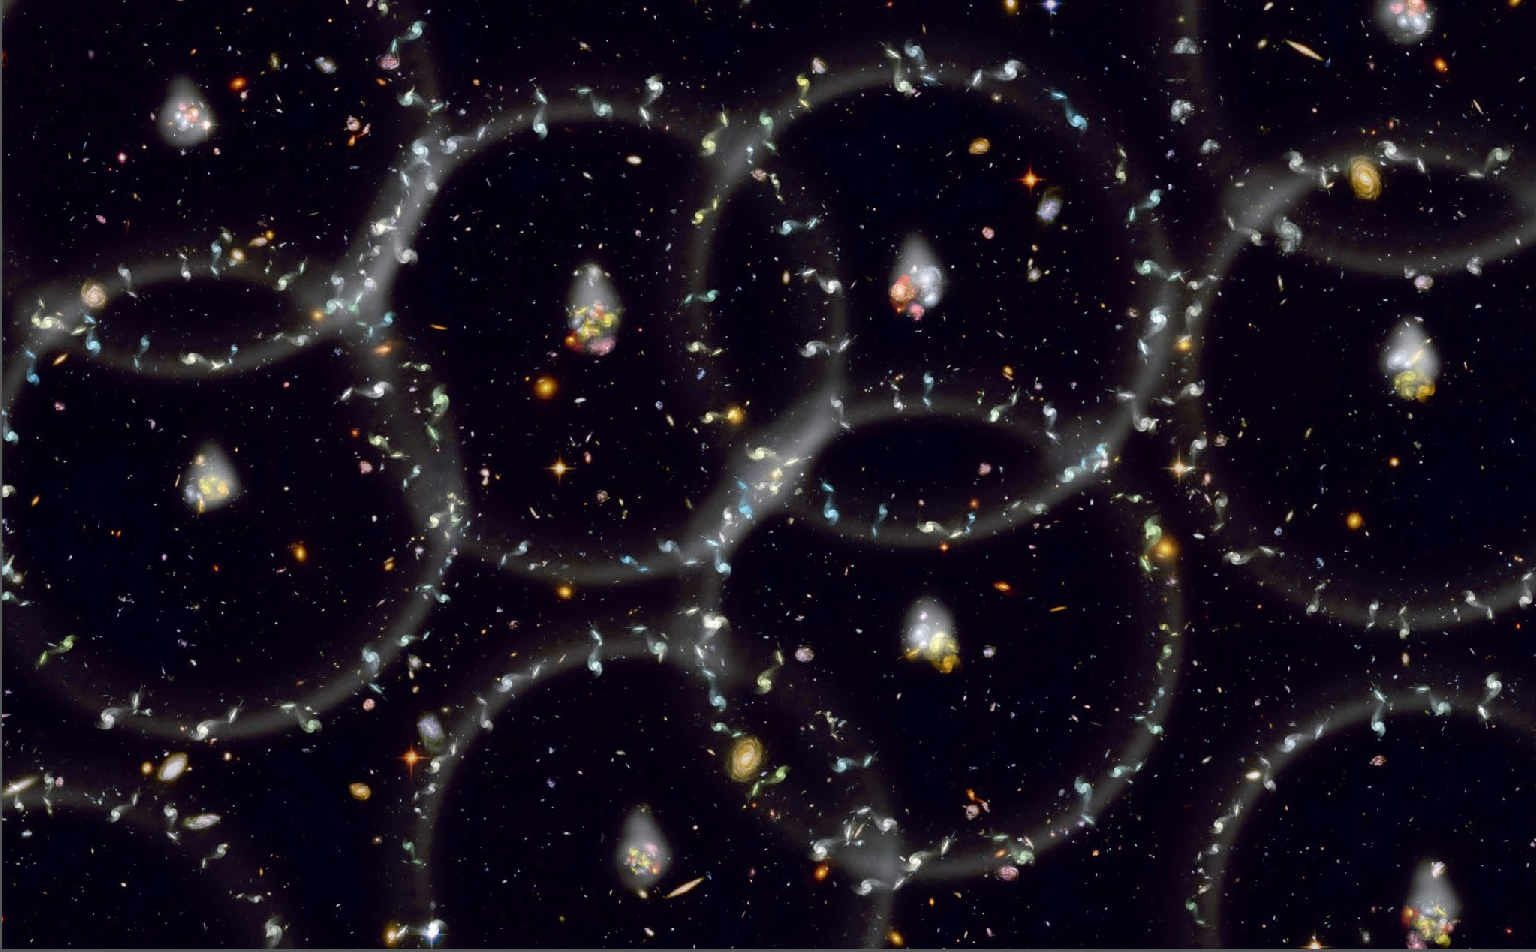  重子声学振荡意味着，找到相隔150百万秒差距的成对星系的可能性高于均值